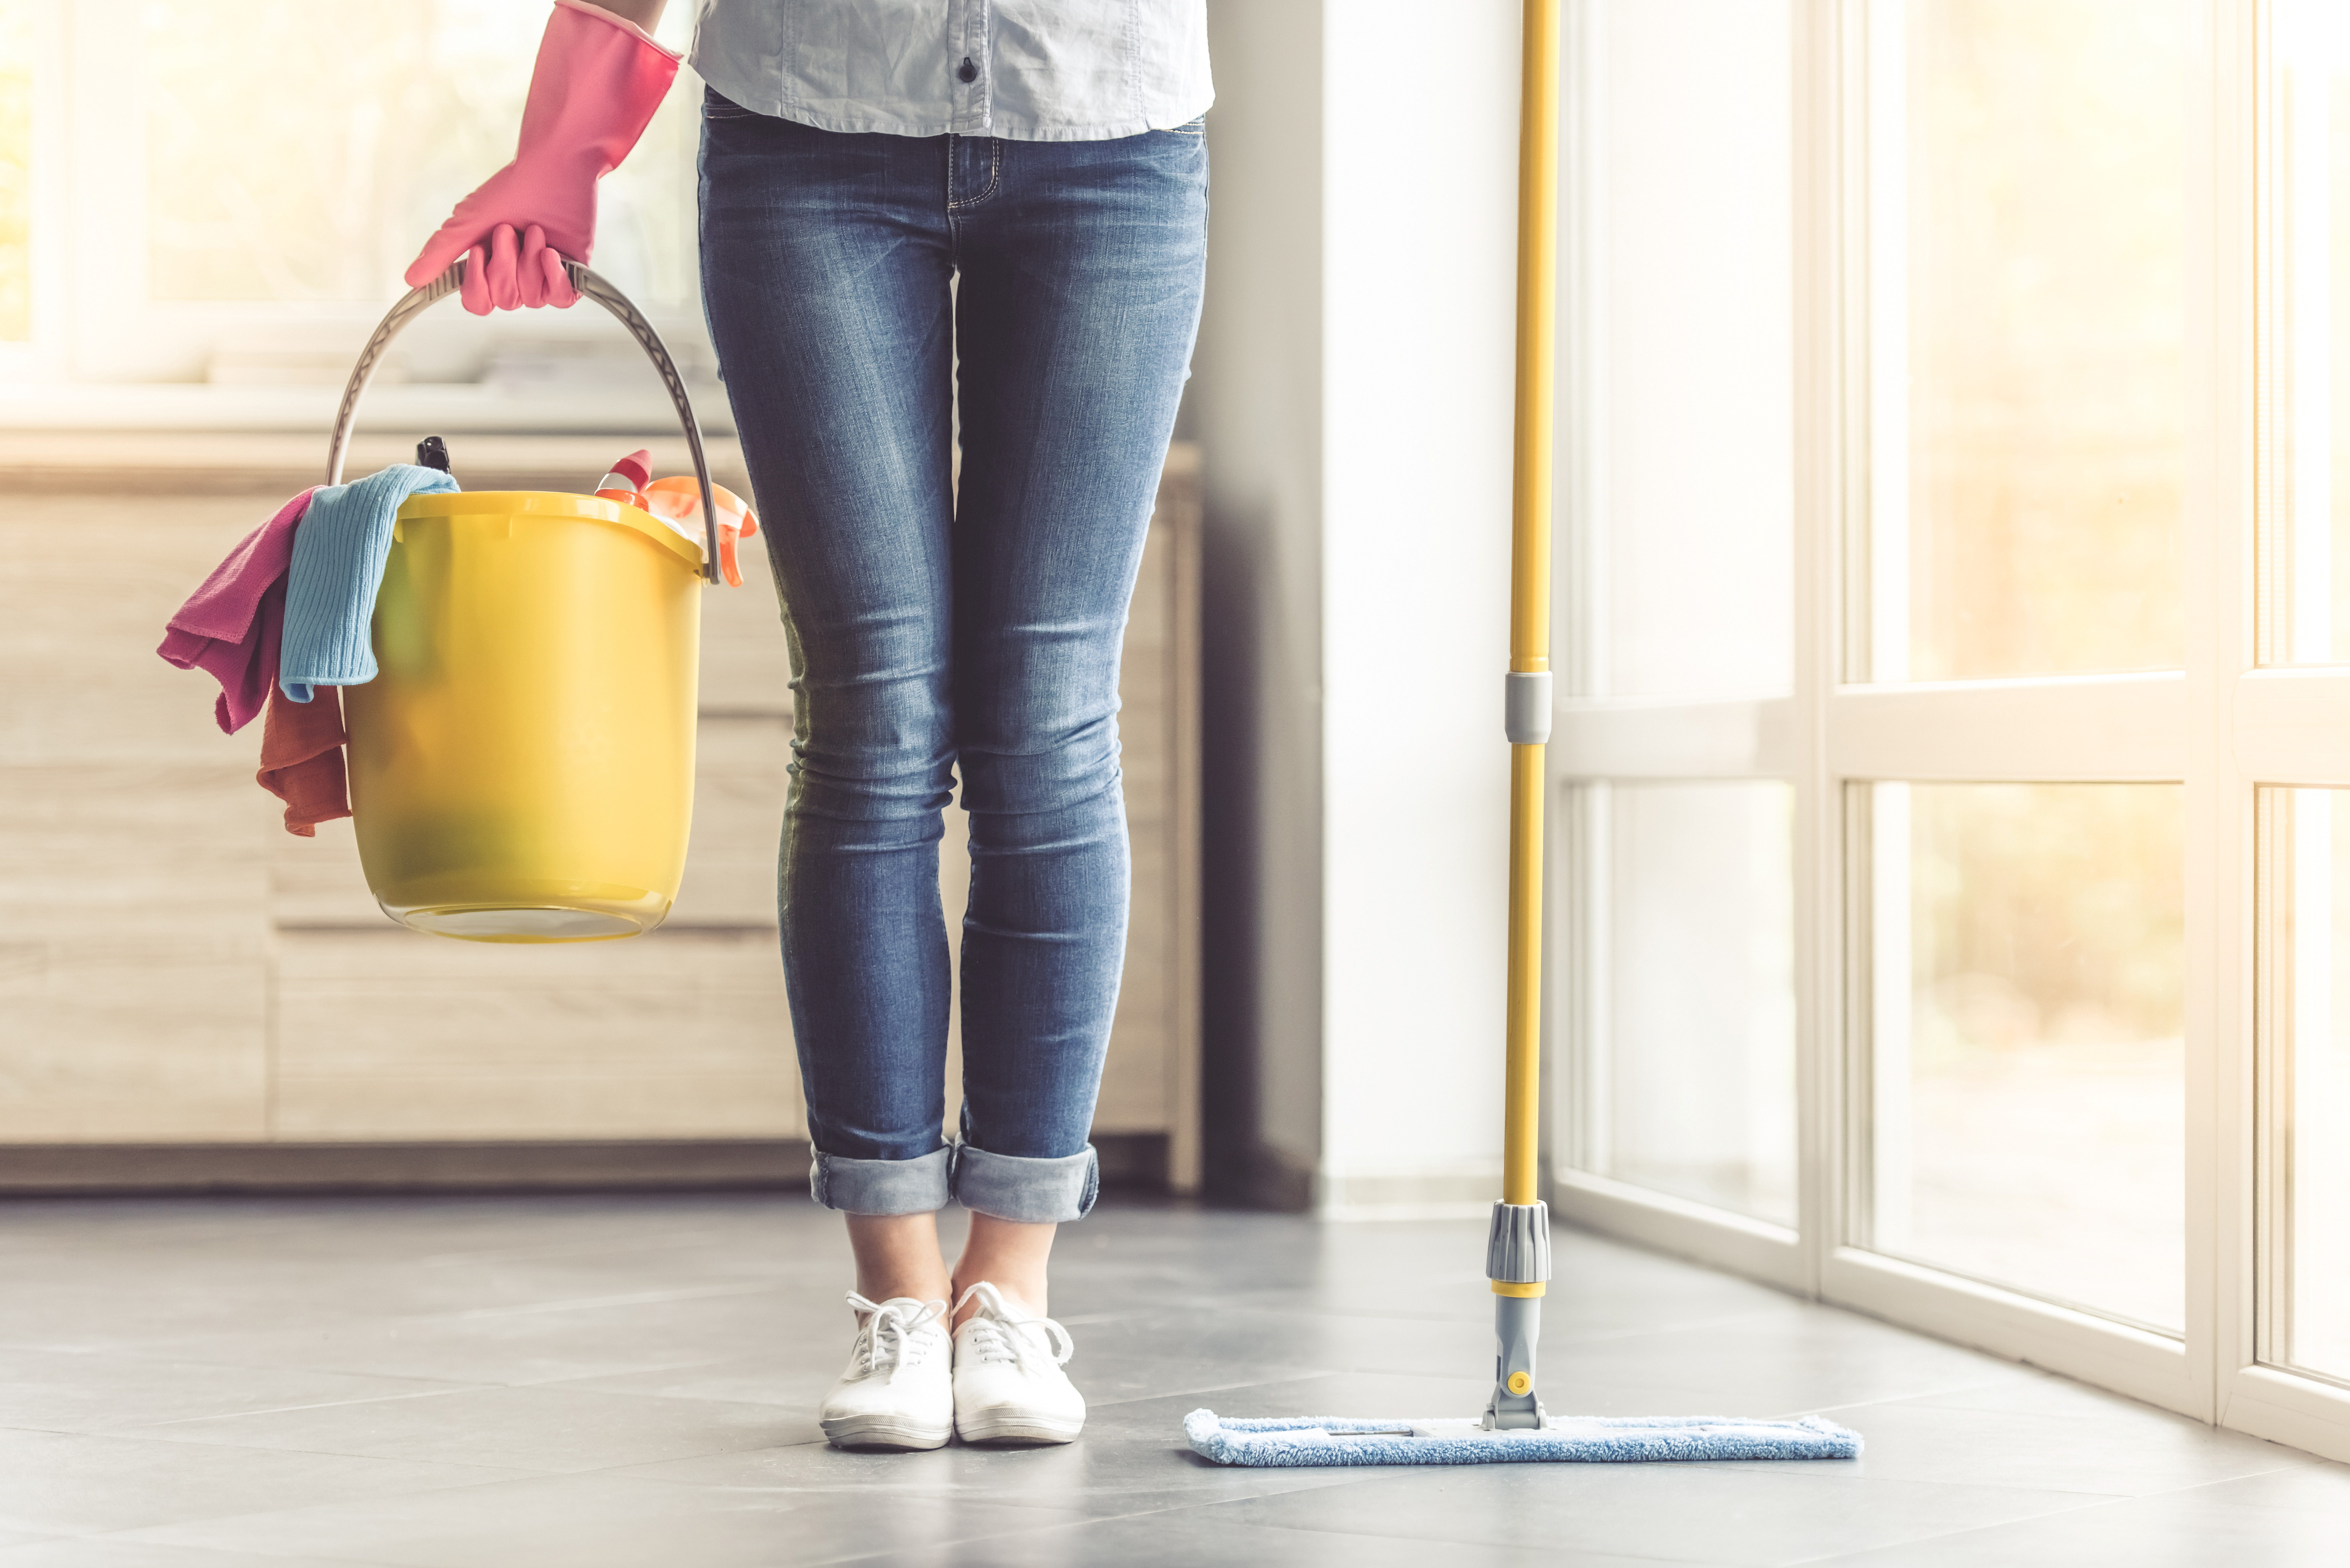 Voici comment procéder pour nettoyer vos sols correctement.